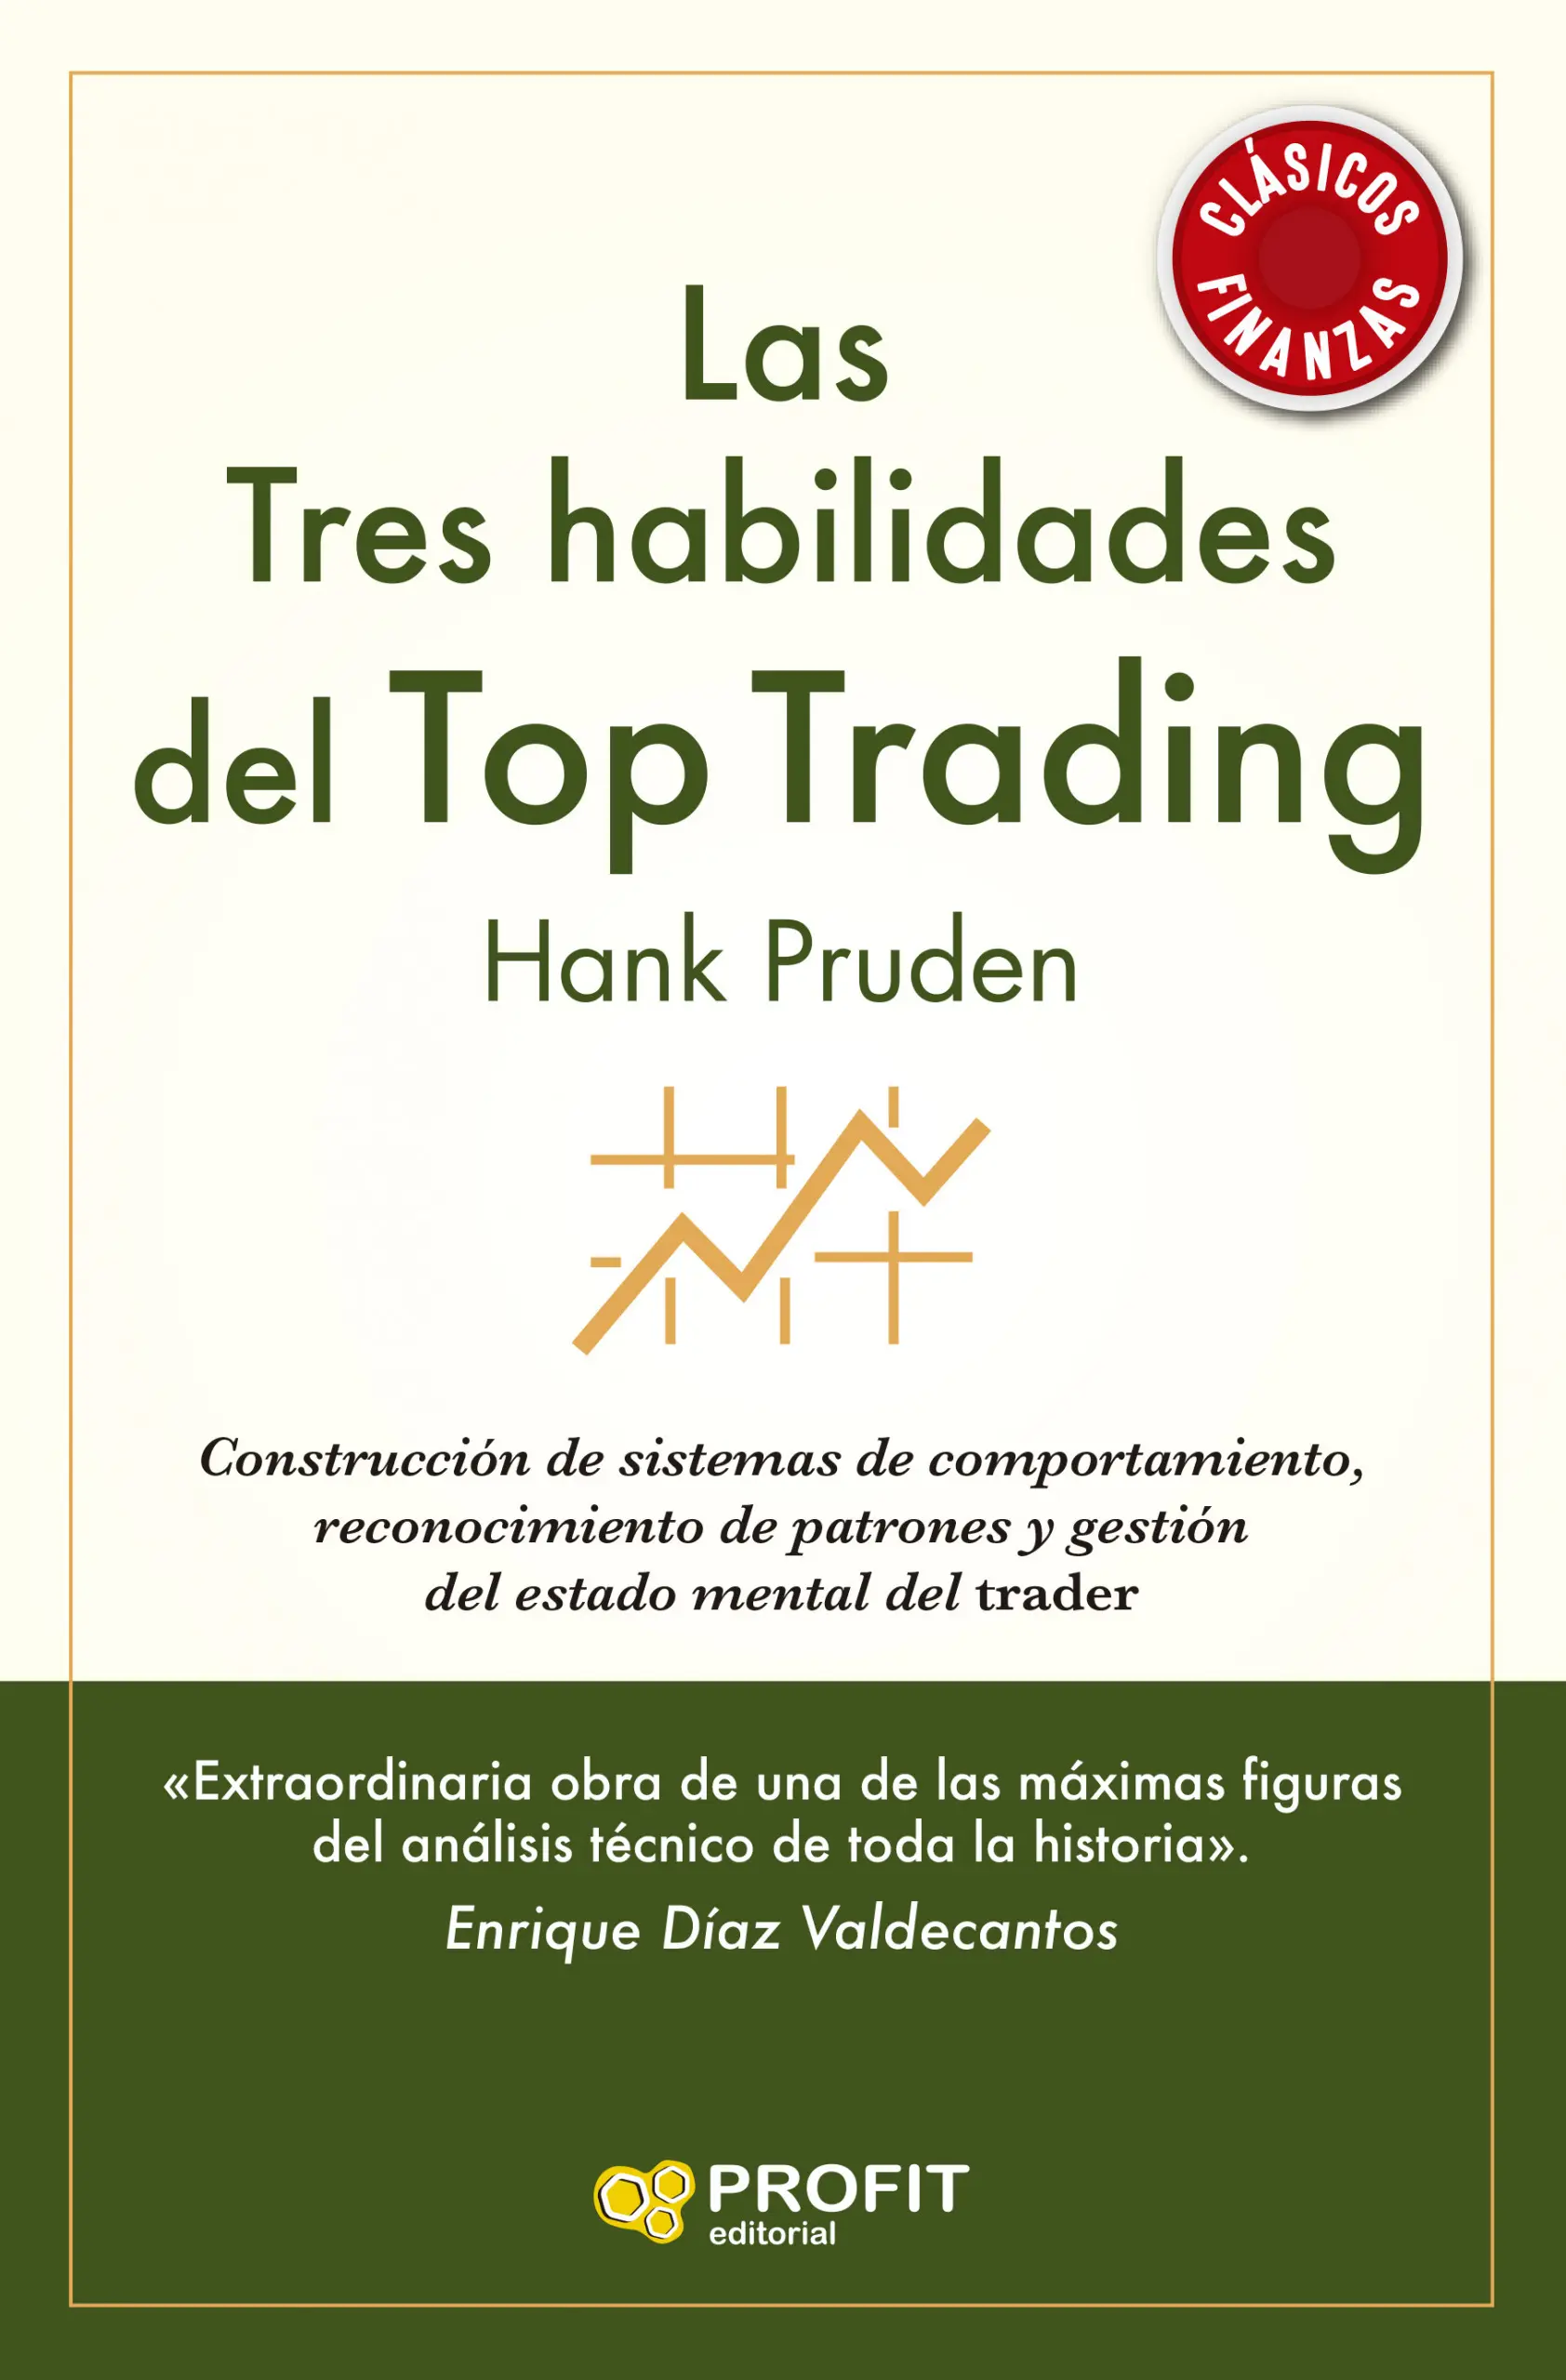 Las Tres habilidades del Top Trading | Hank Pruden | Libros de empresa y negocios